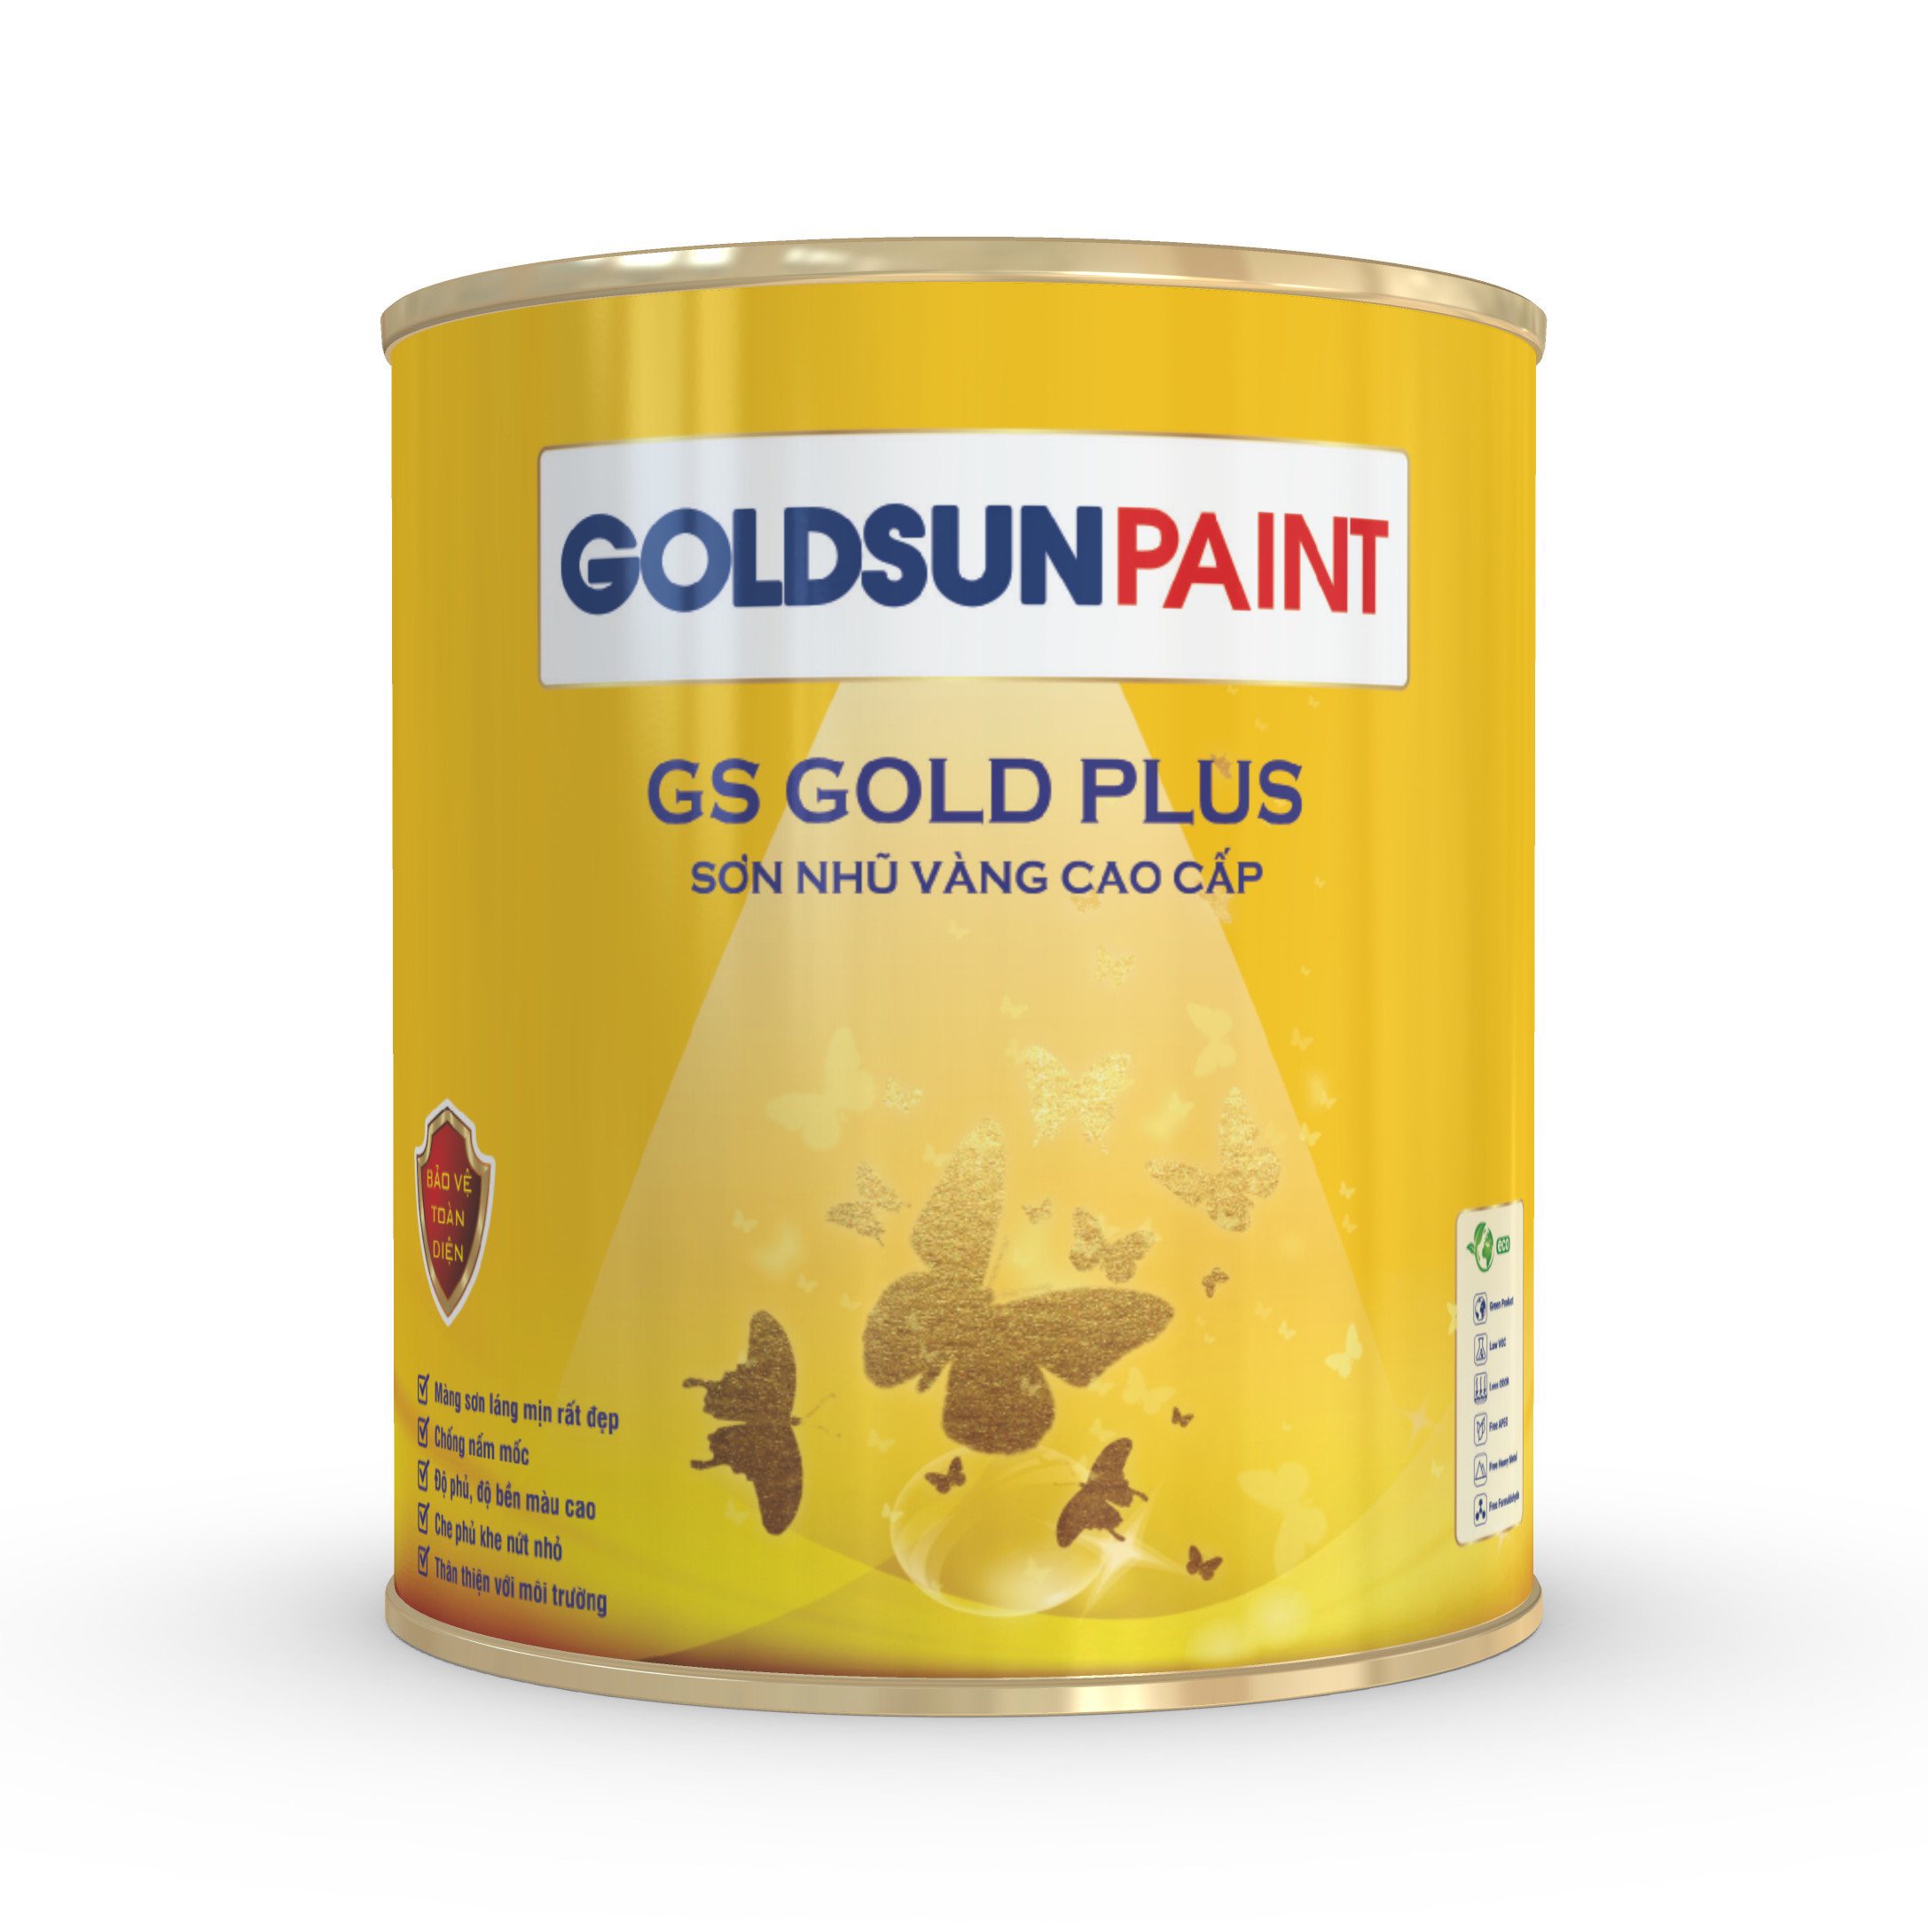 GS GOLD PLUS - Sơn nhũ vàng cao cấp 